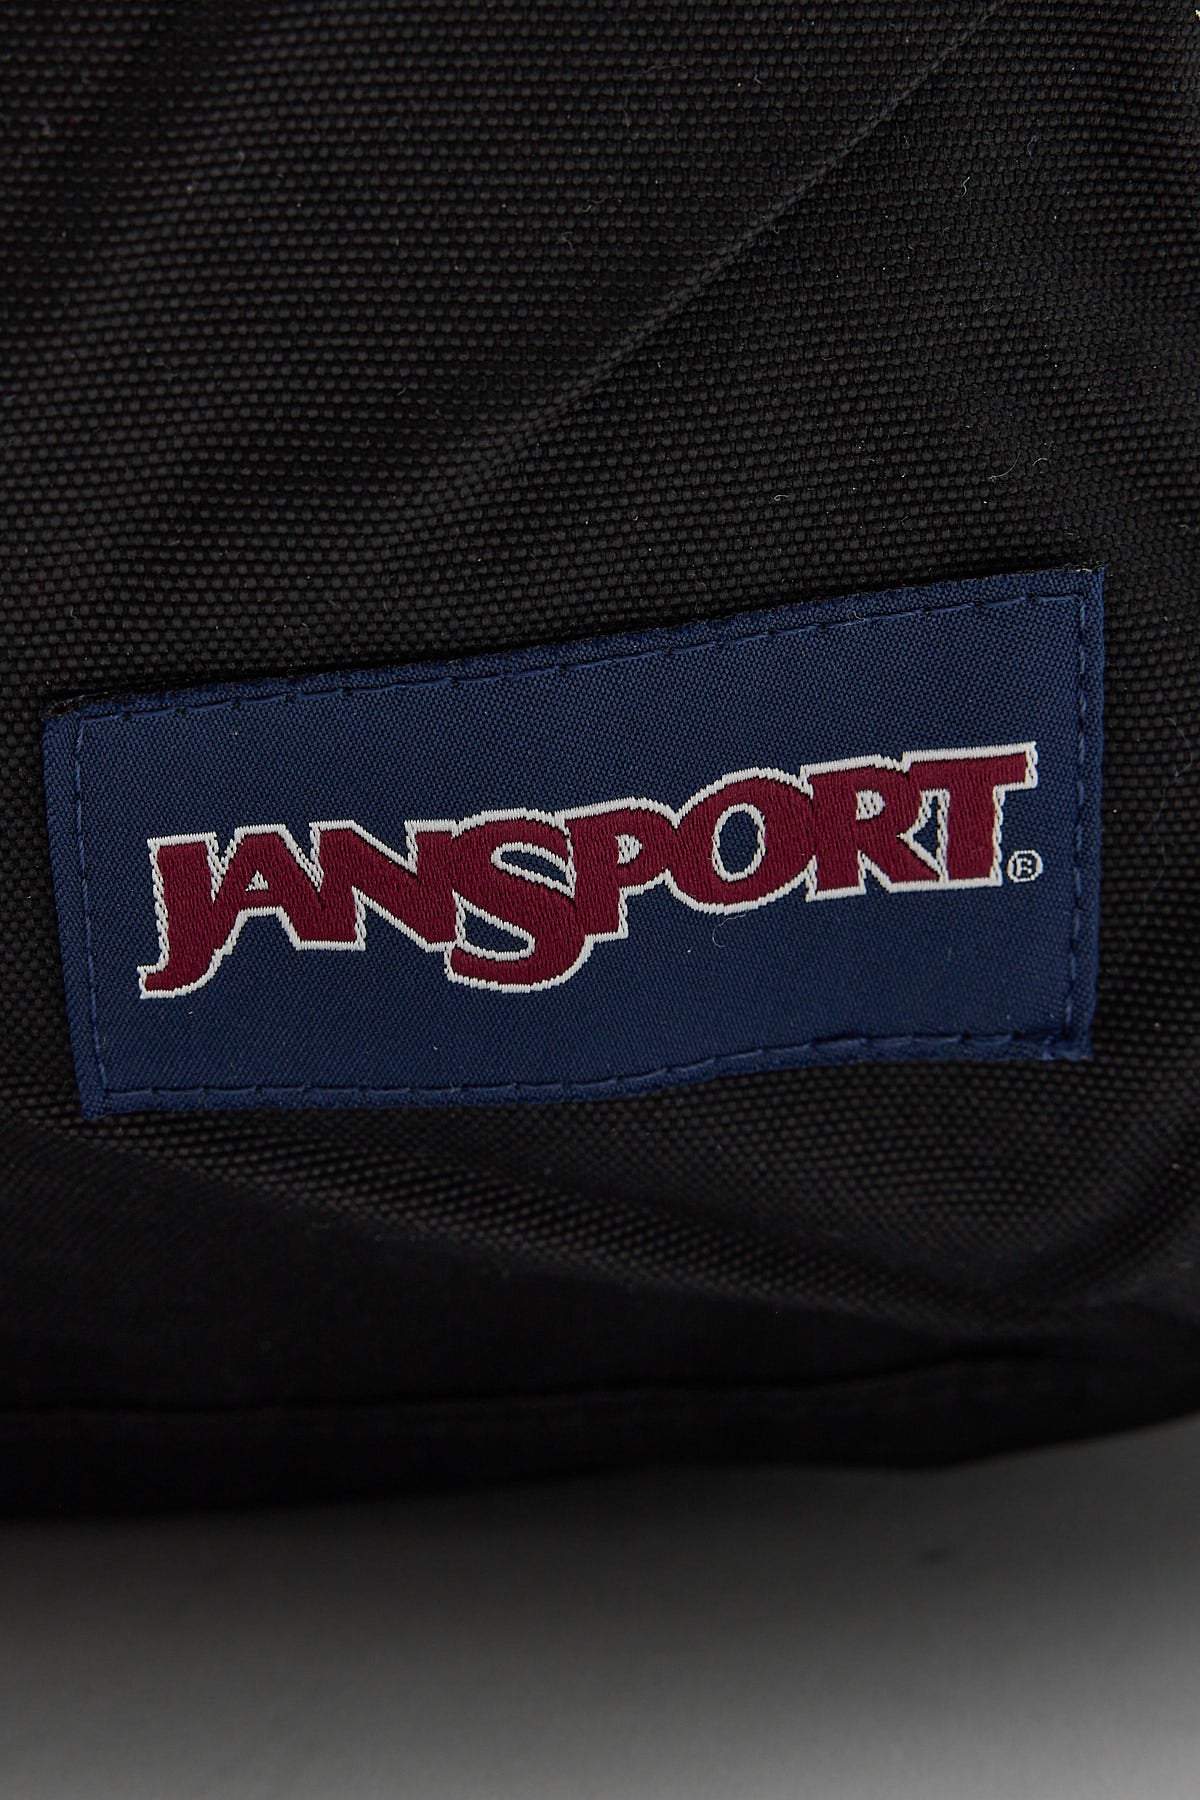 Jansport Lounge Pack Black